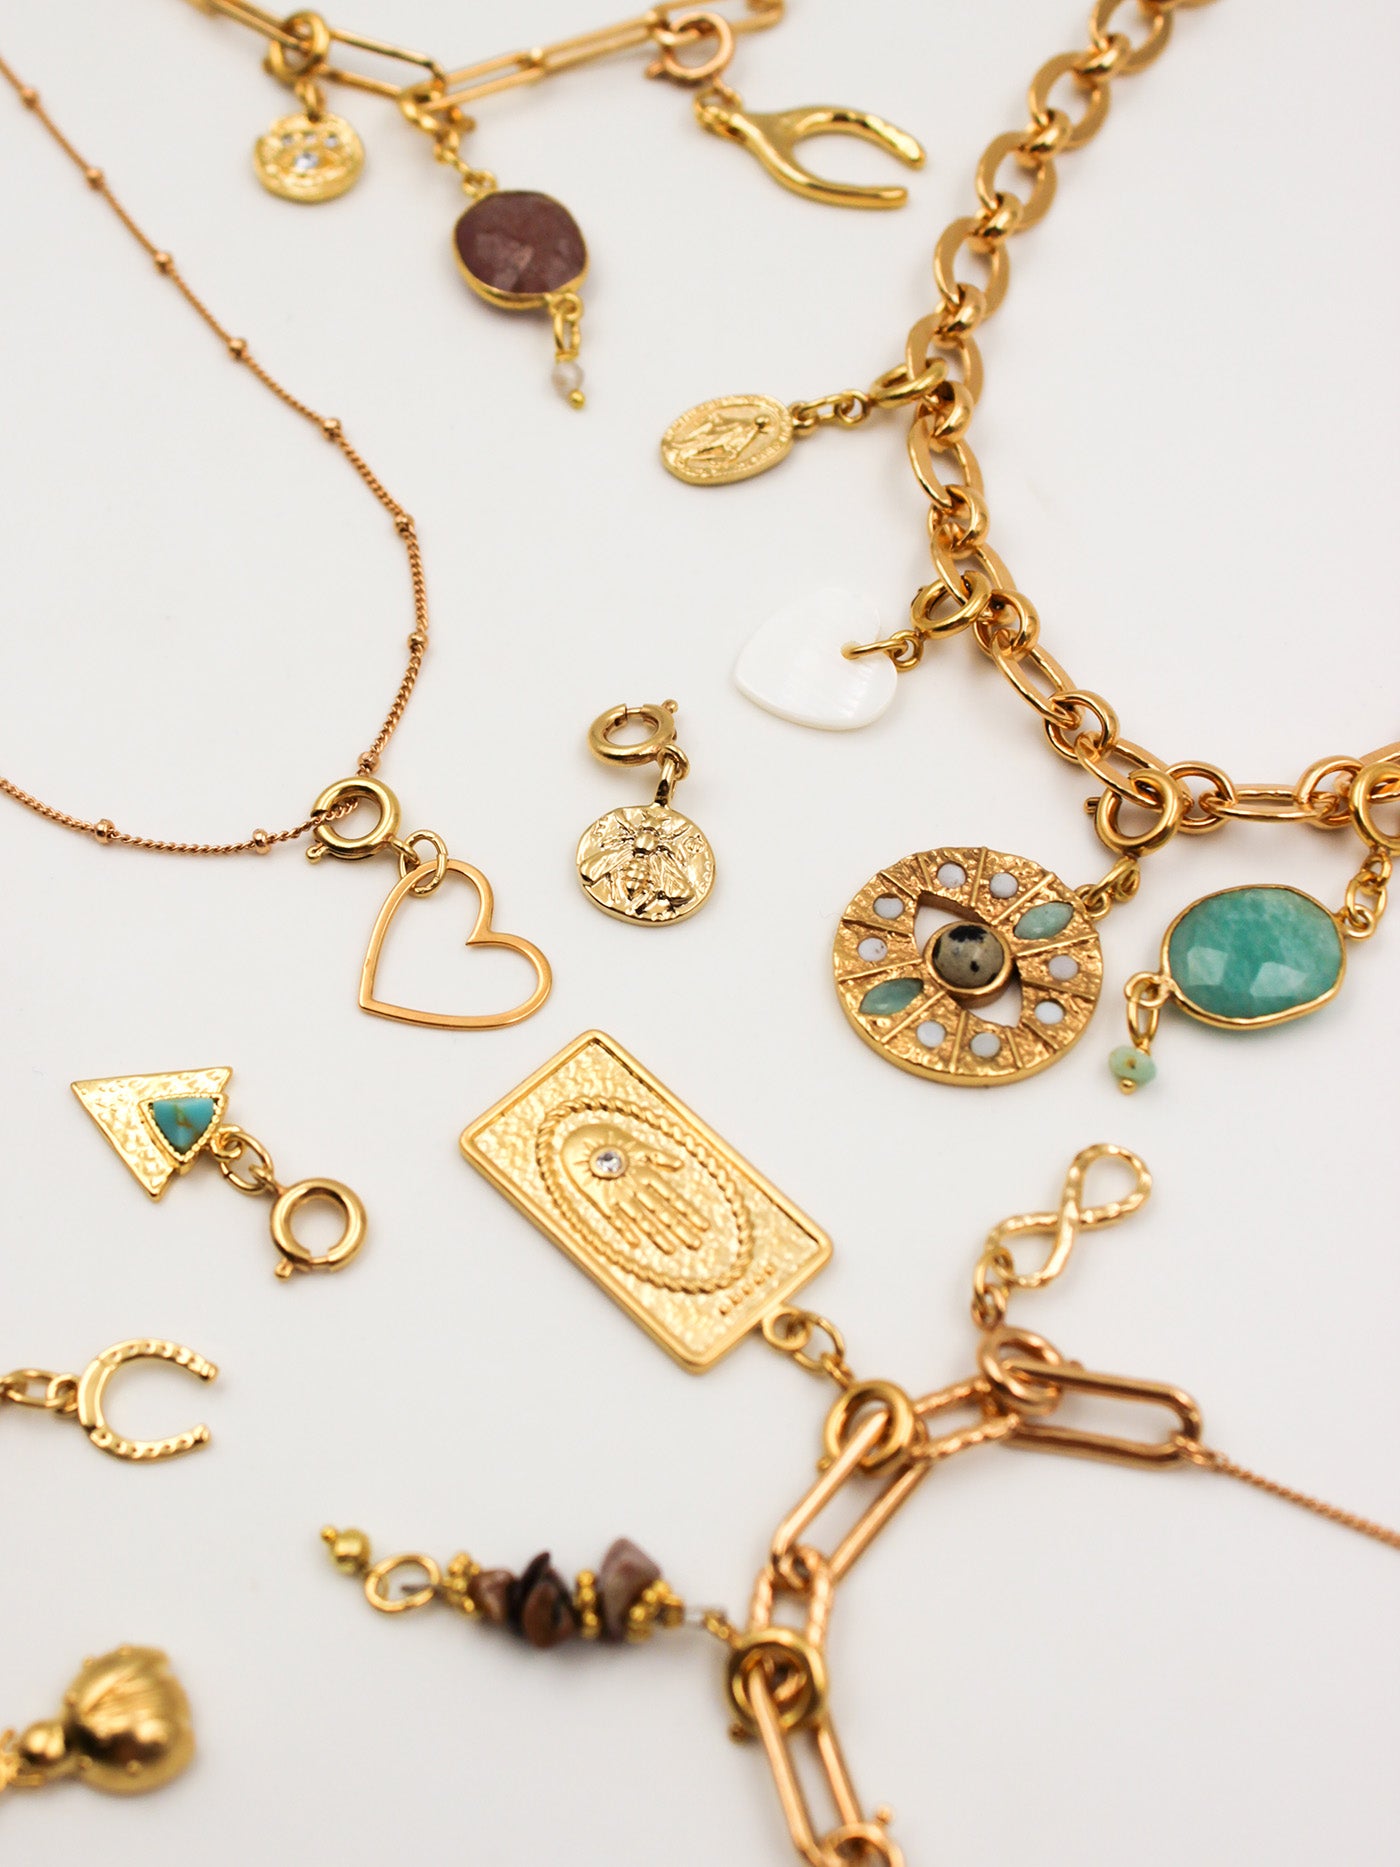 Compositions de charms sur des bases de colliers de la gamme GRIGRI - L'Atelier des Dames